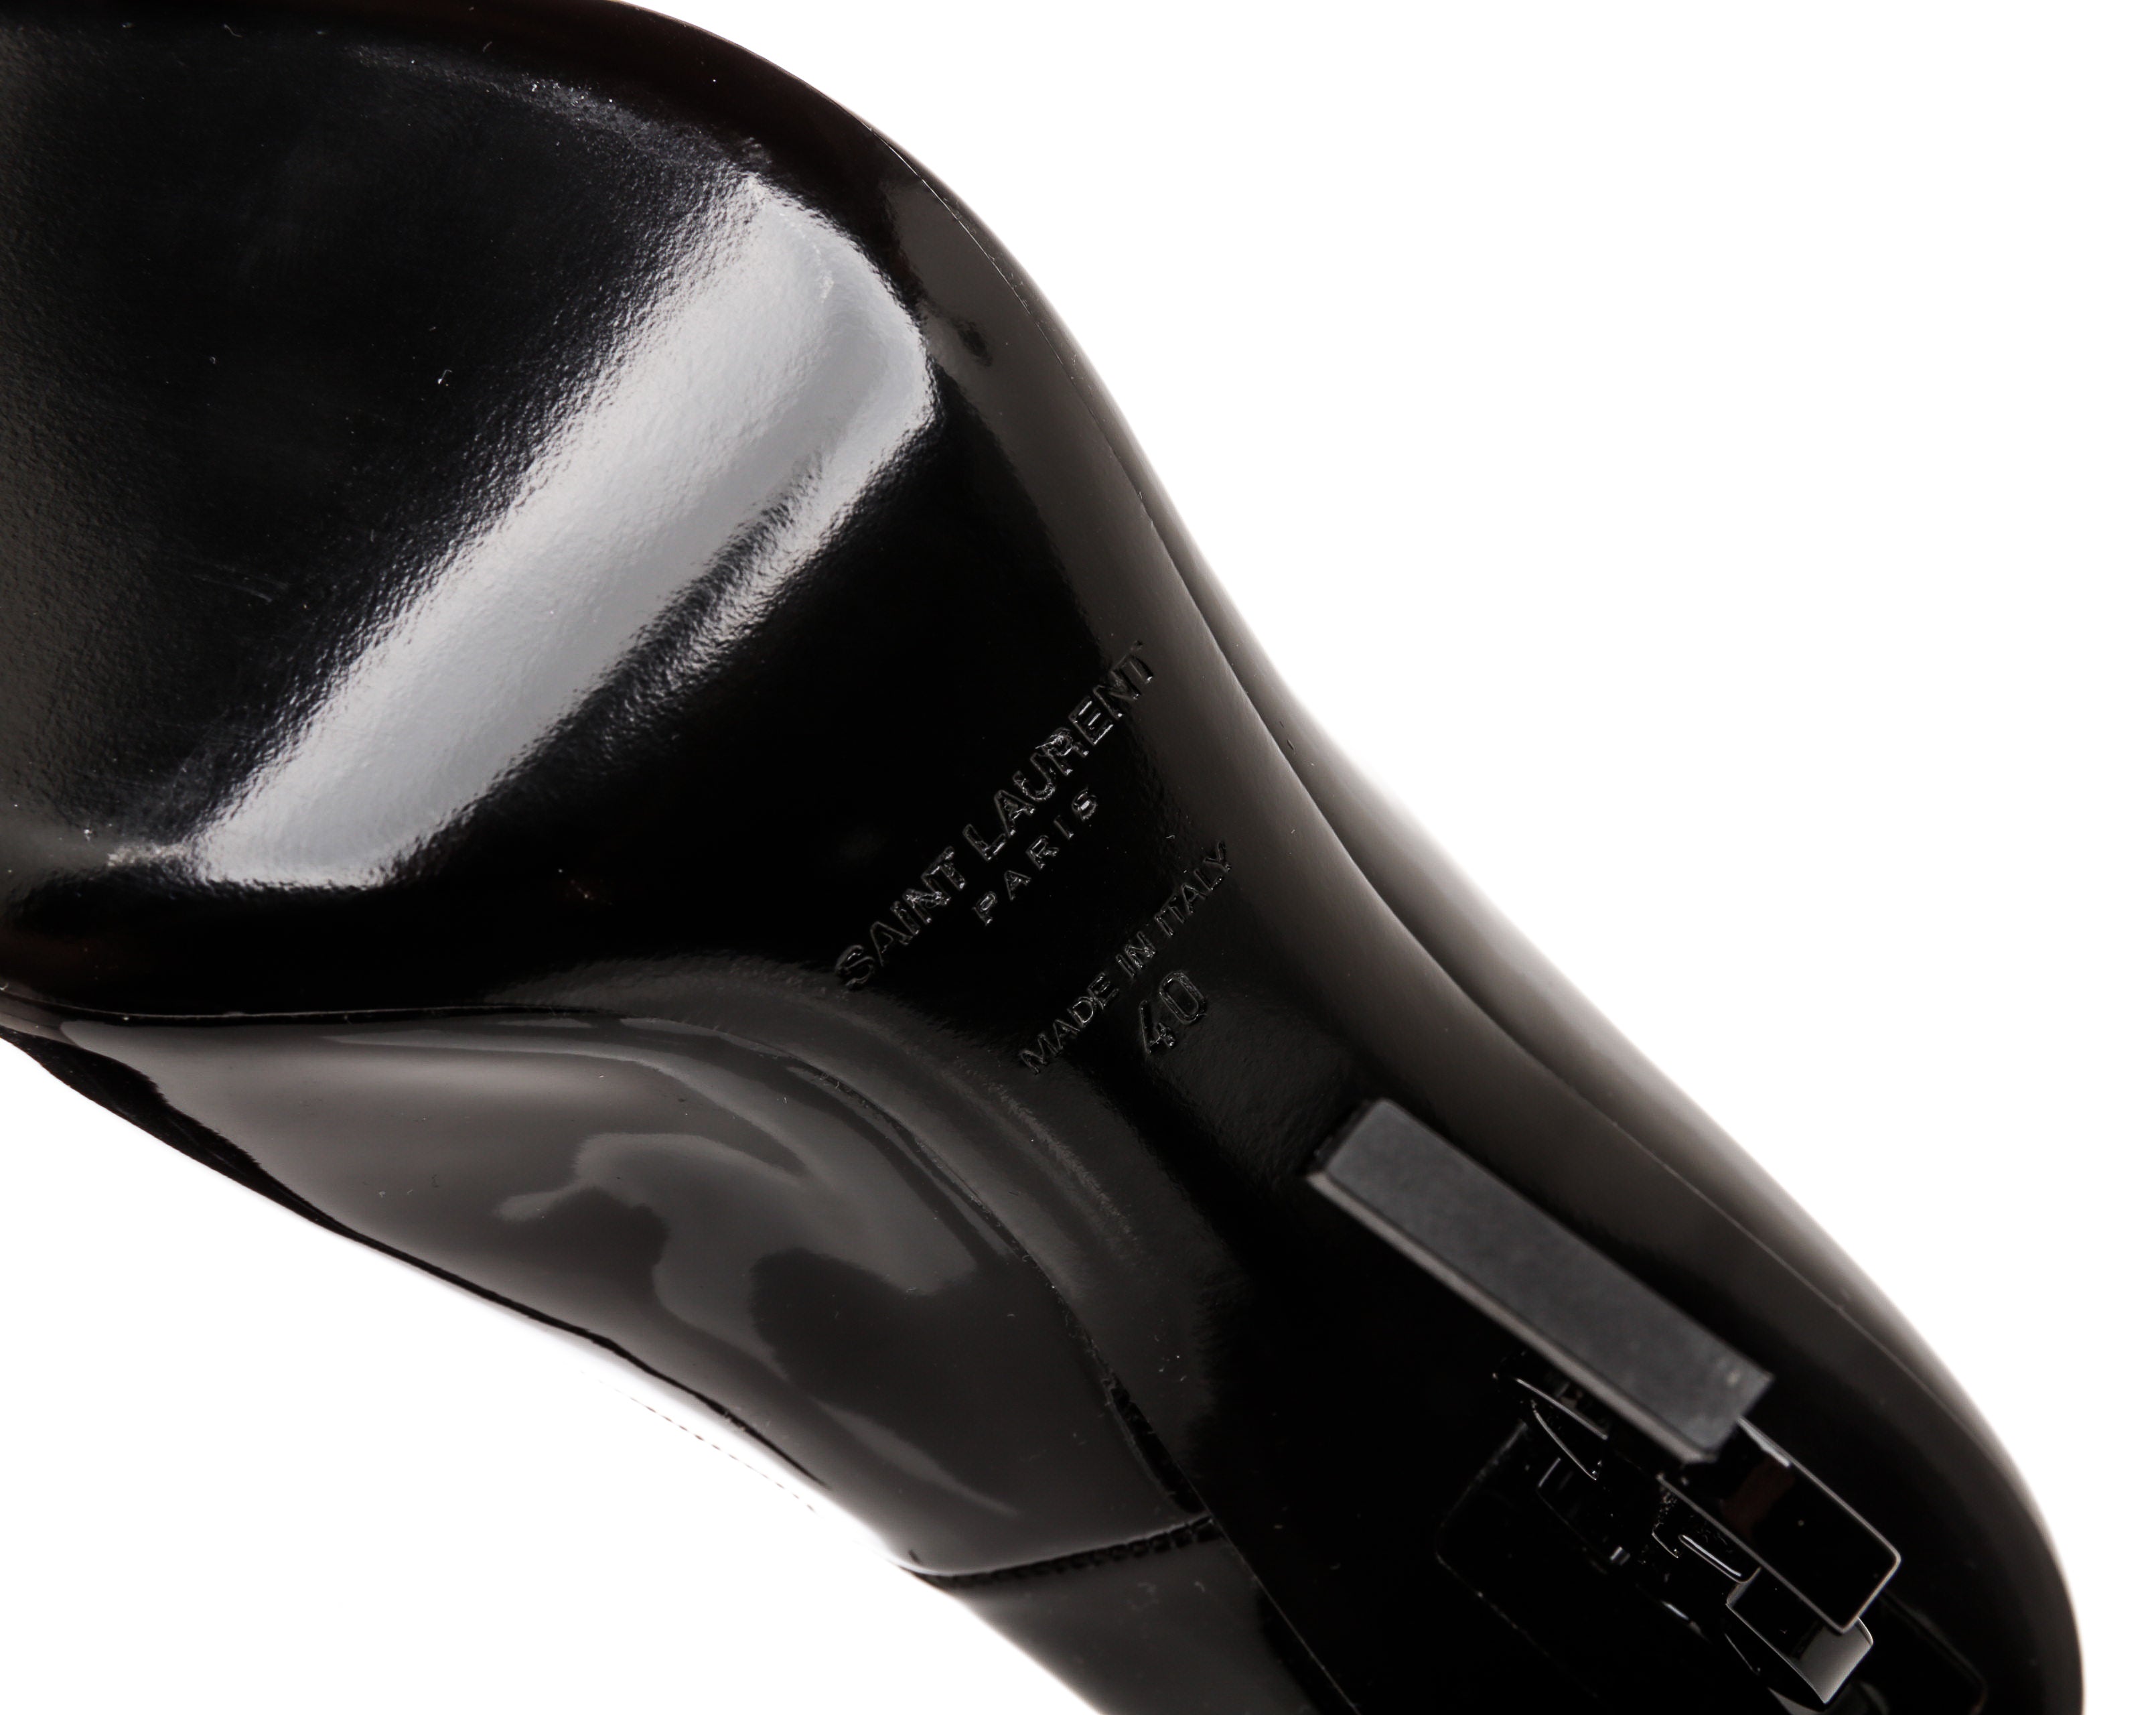 Saint Laurent Black Patent Leather YSL Opyum Heel Pumps Size 40